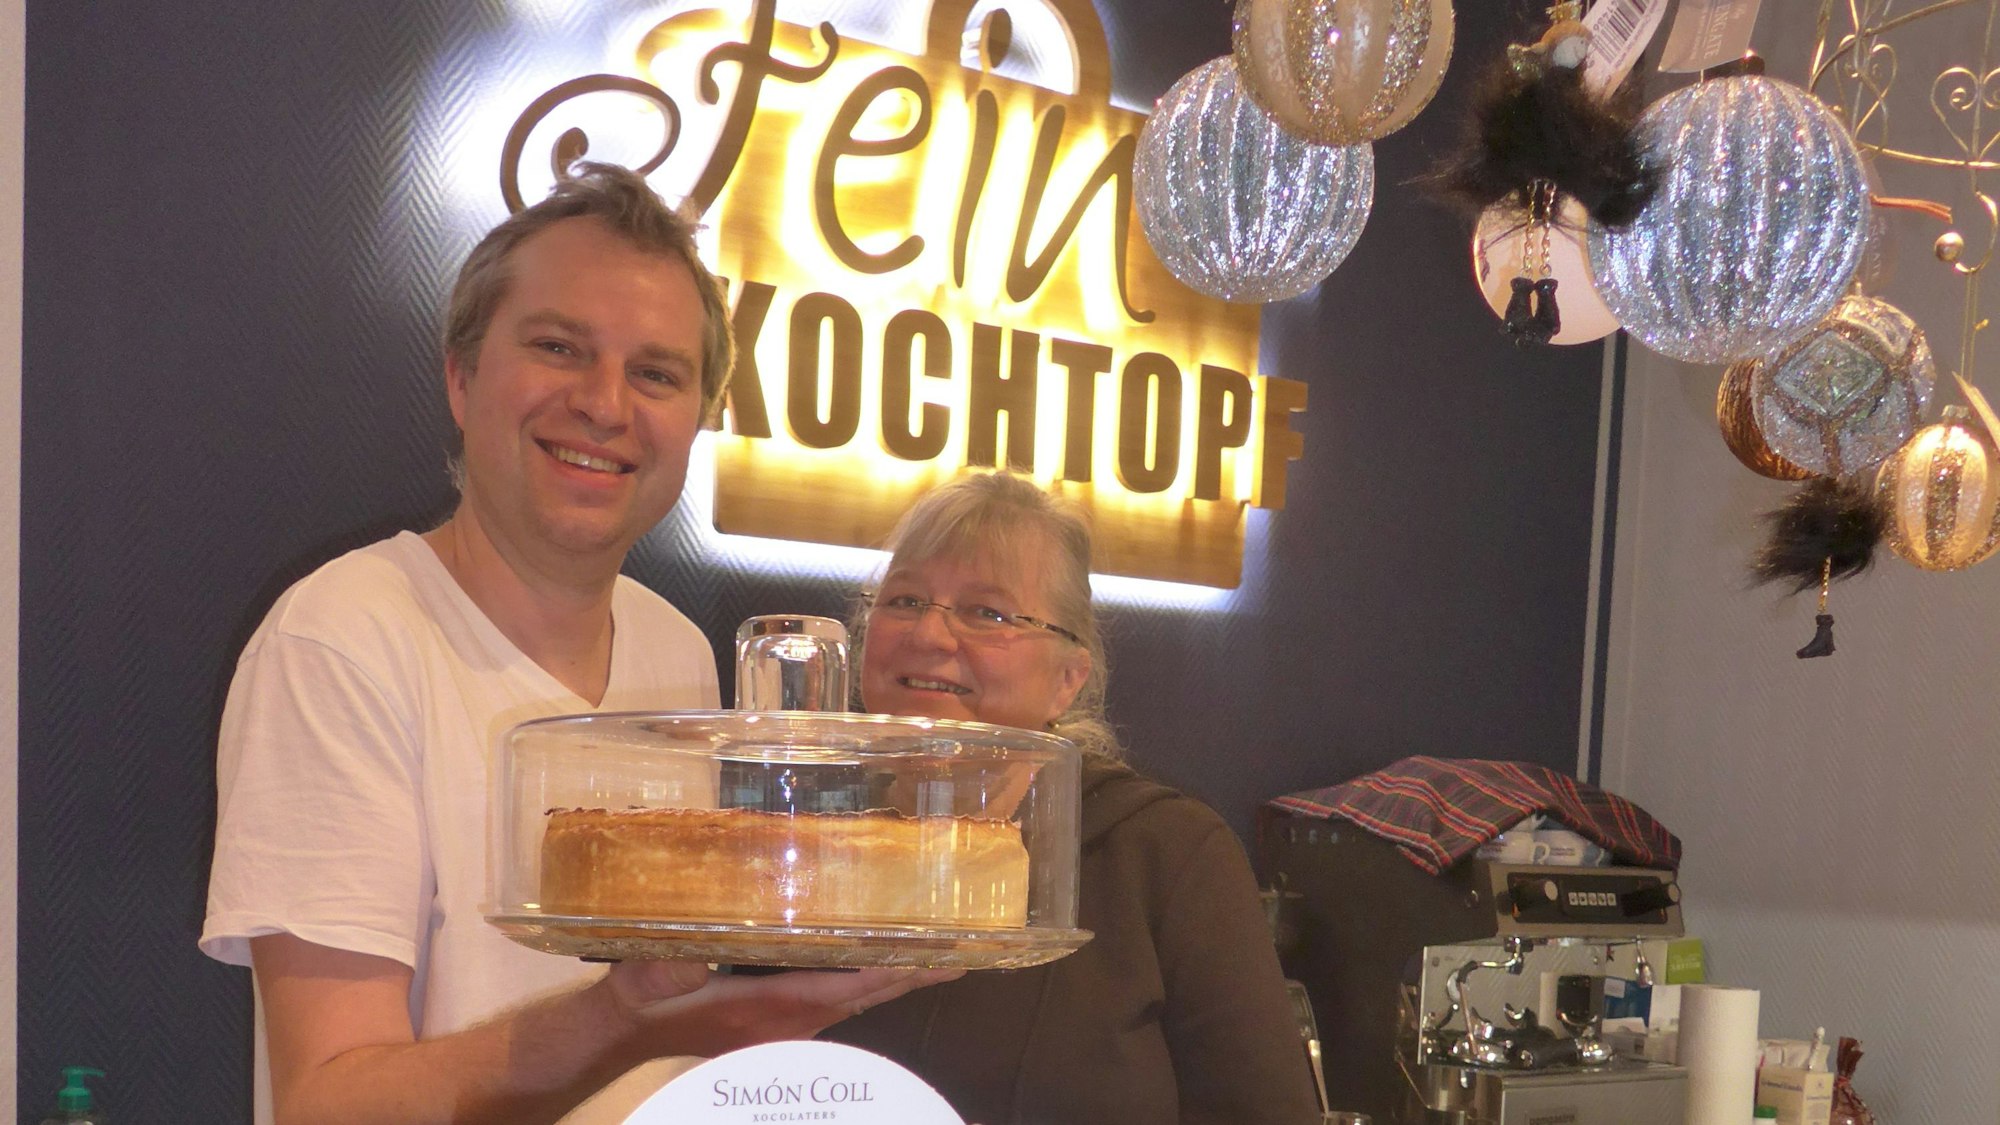 Monika und Sascha Weidner stehen hinter der Theke, er hält eine Kuchenplatte mit Käsekuchen in der Hand.